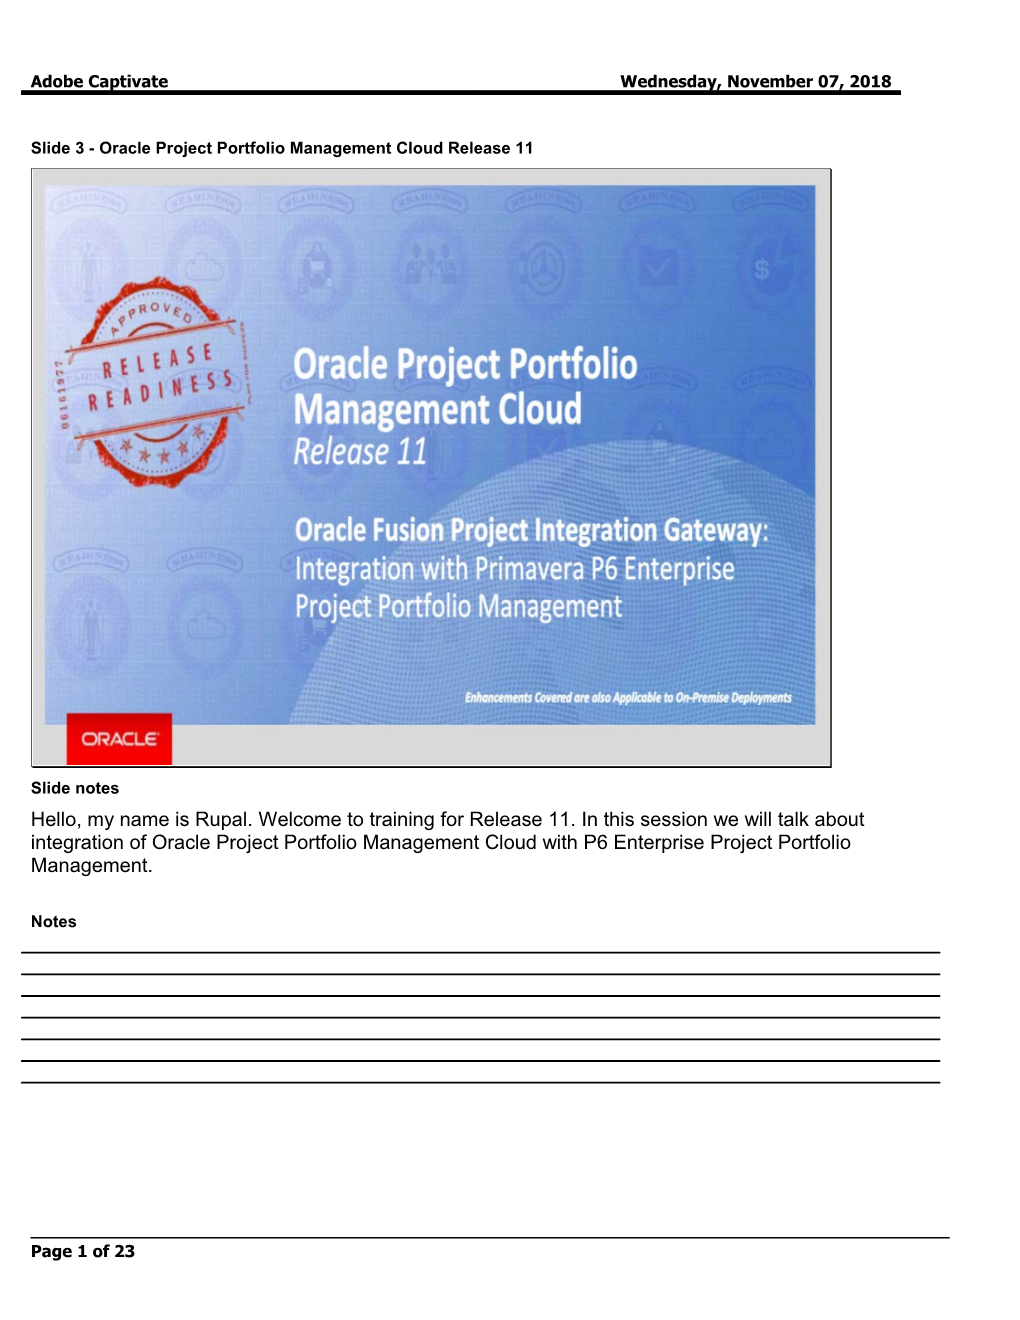 Slide 3 - Oracle Project Portfolio Management Cloud Release 11